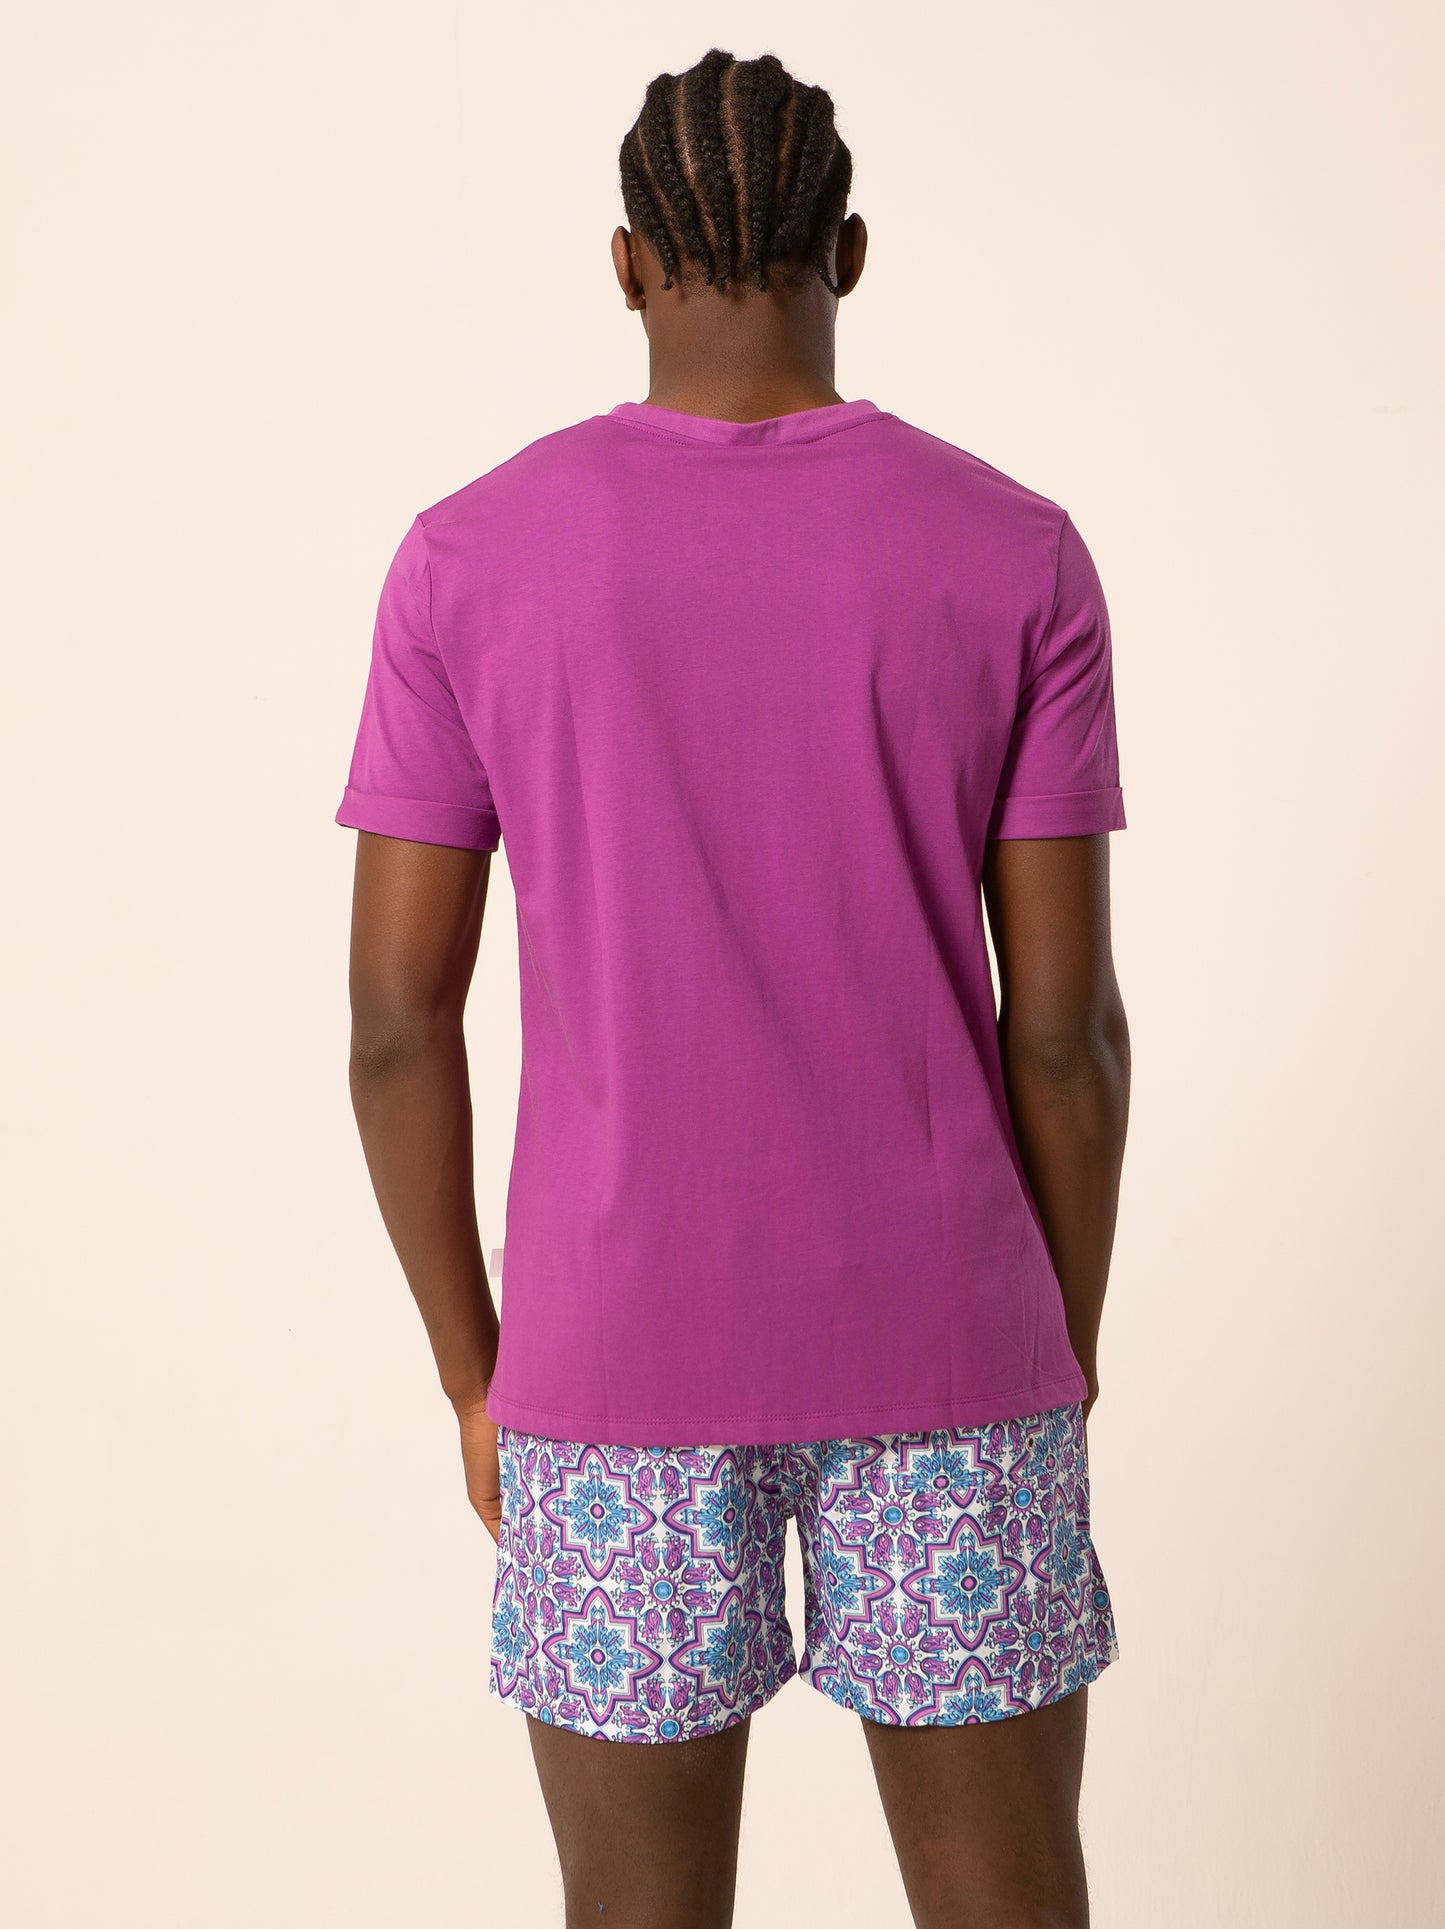 Ortiga - T-shirt viola fantasia logo maiolica